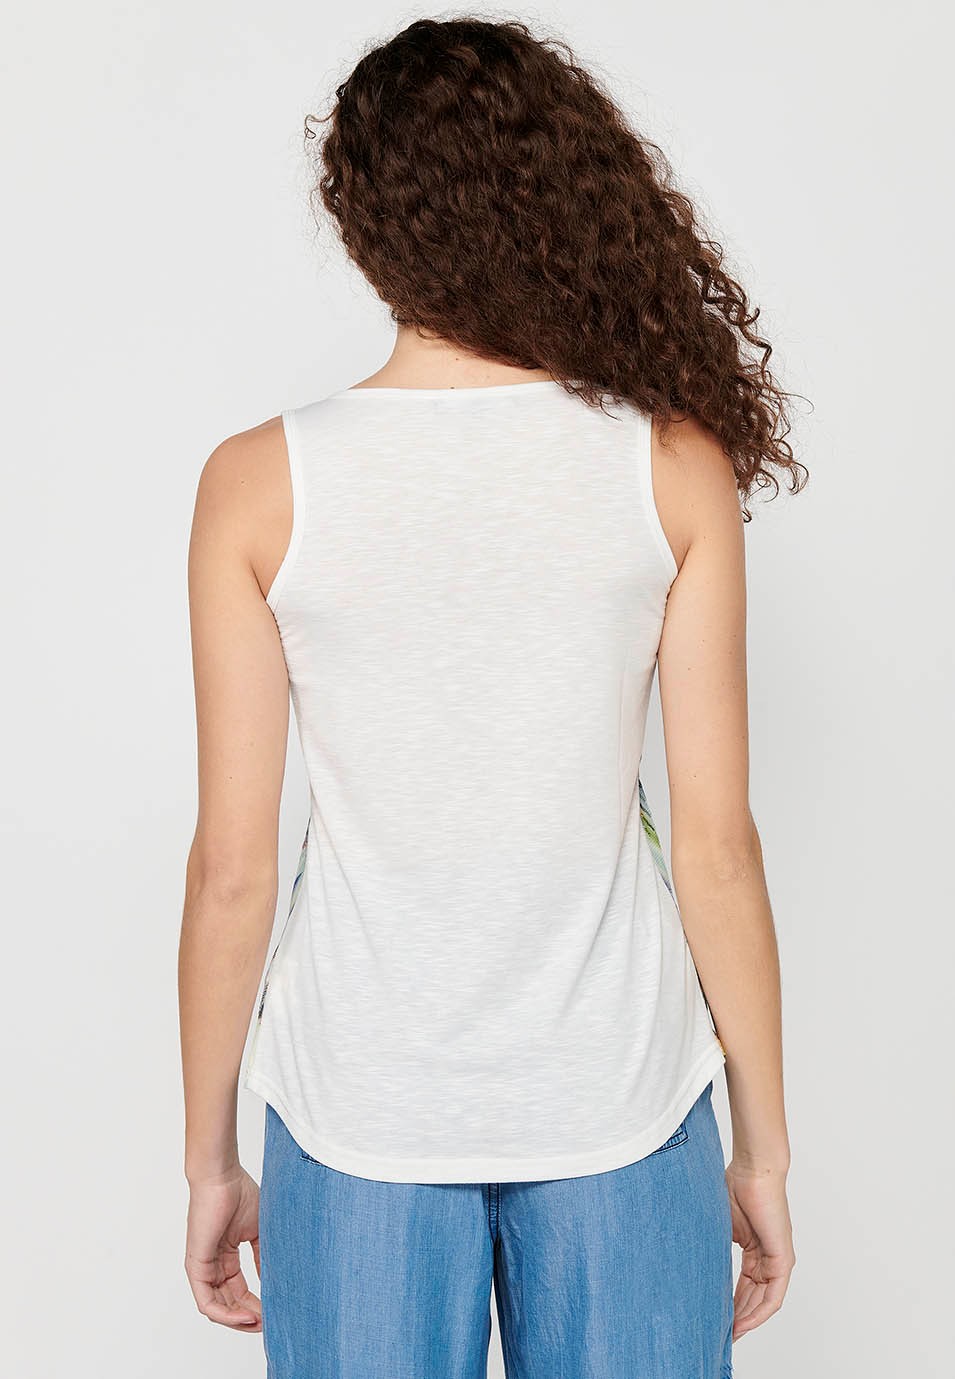 Camiseta de tirantes Top con Escote redondo y Estampado floral y lentejuelas delantero de Color Blanco para Mujer 9